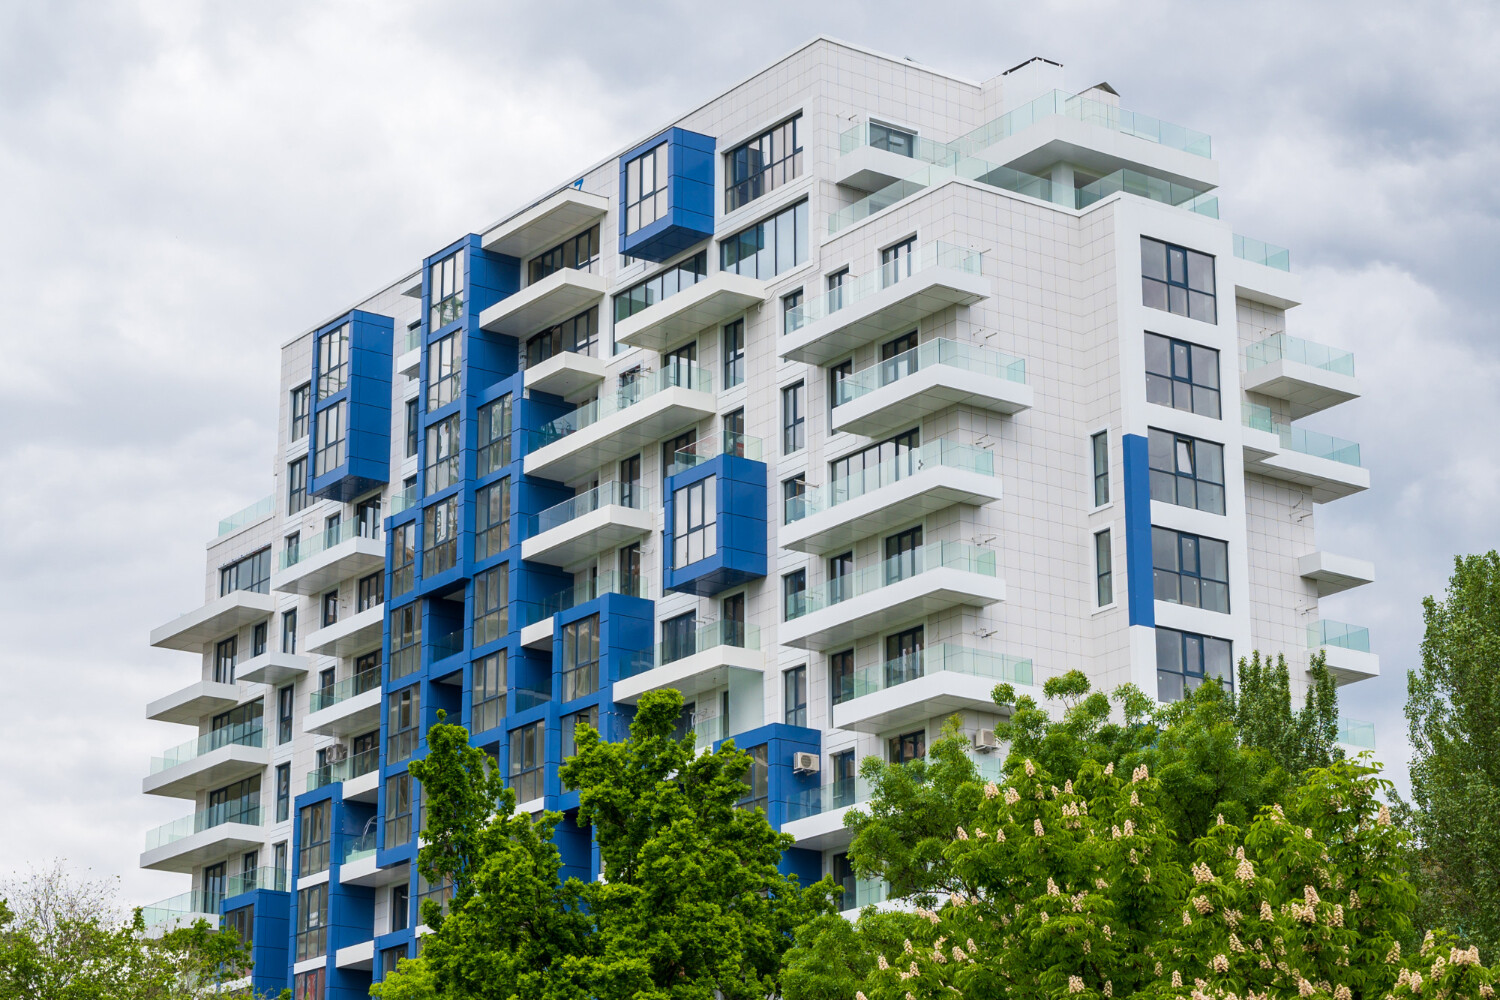 Ceny nehnuteľností: o koľko vzrástli medziročne cenovky bytov a domov?